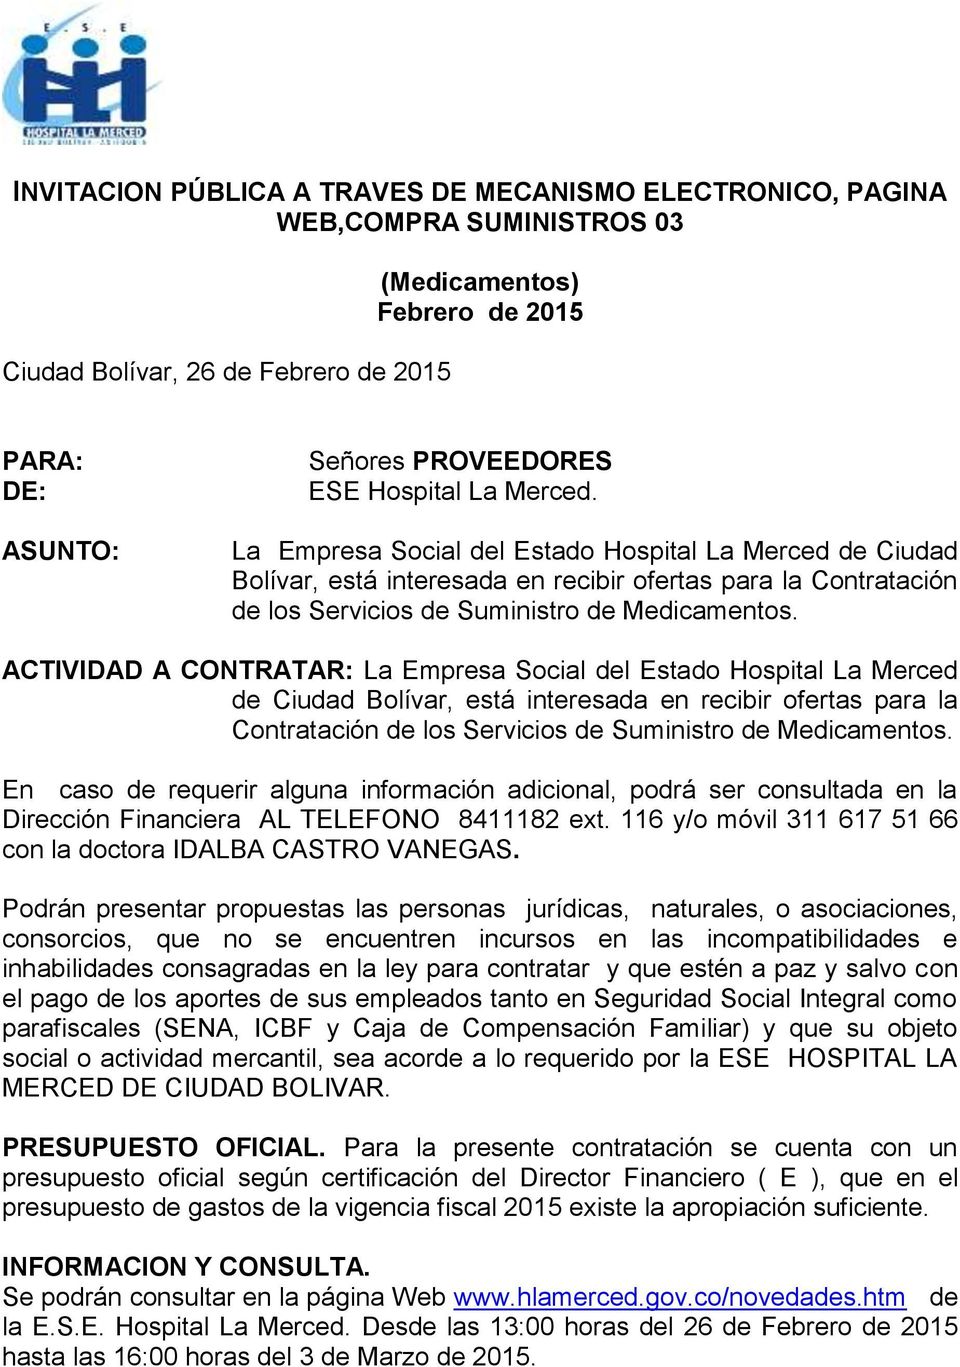 ACTIVIDAD A CONTRATAR: La Empresa Social del Estado Hospital La Merced de Ciudad Bolívar, está interesada en recibir ofertas para la Contratación de los Servicios de Suministro de Medicamentos.